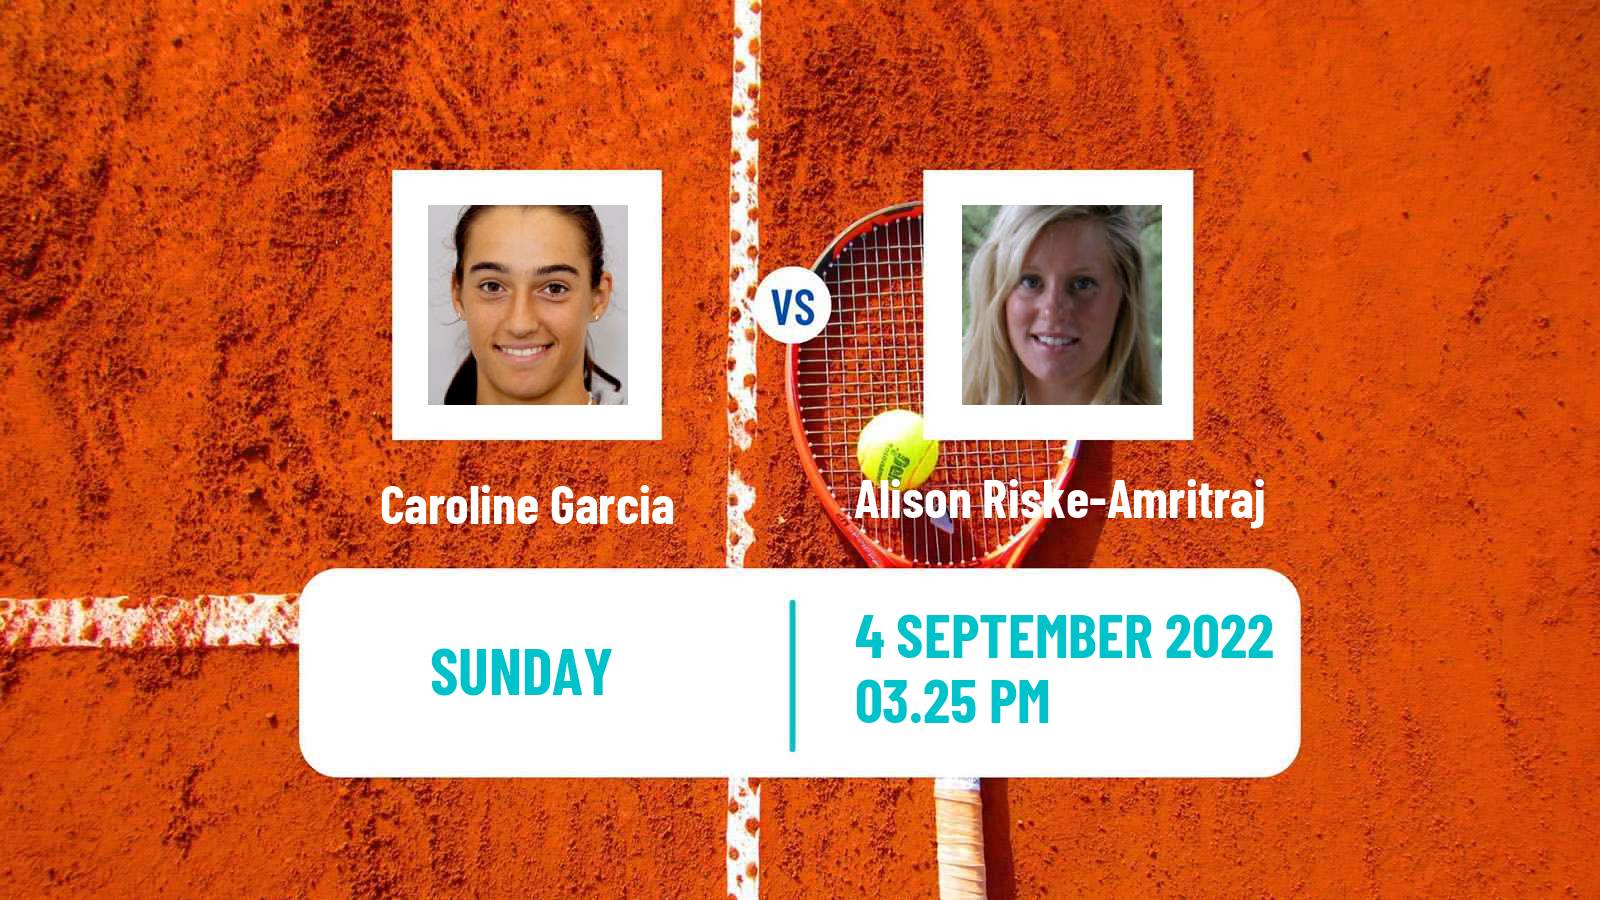 Tennis WTA US Open Caroline Garcia - Alison Riske-Amritraj